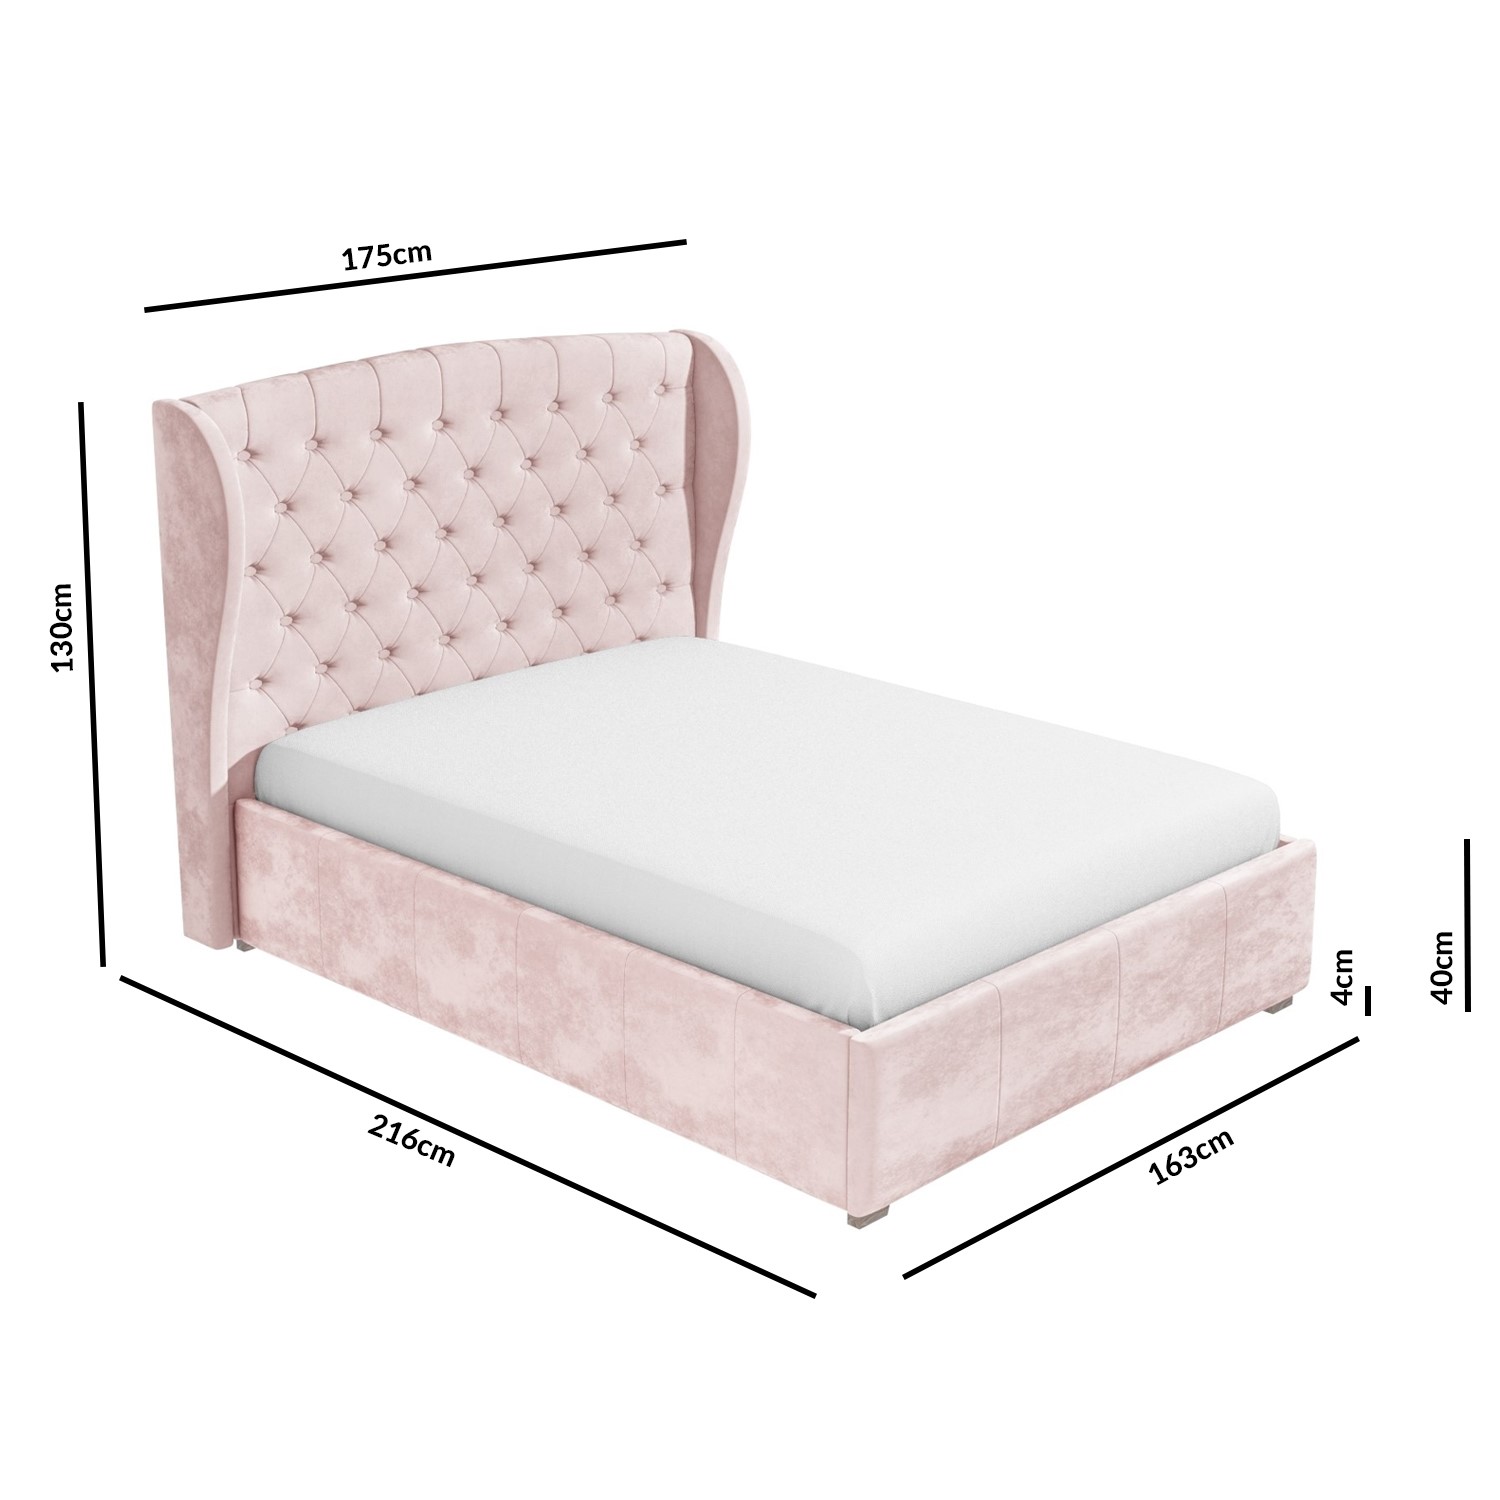 Safina Pink Velvet King Size Ottoman, Pink King Size Bed